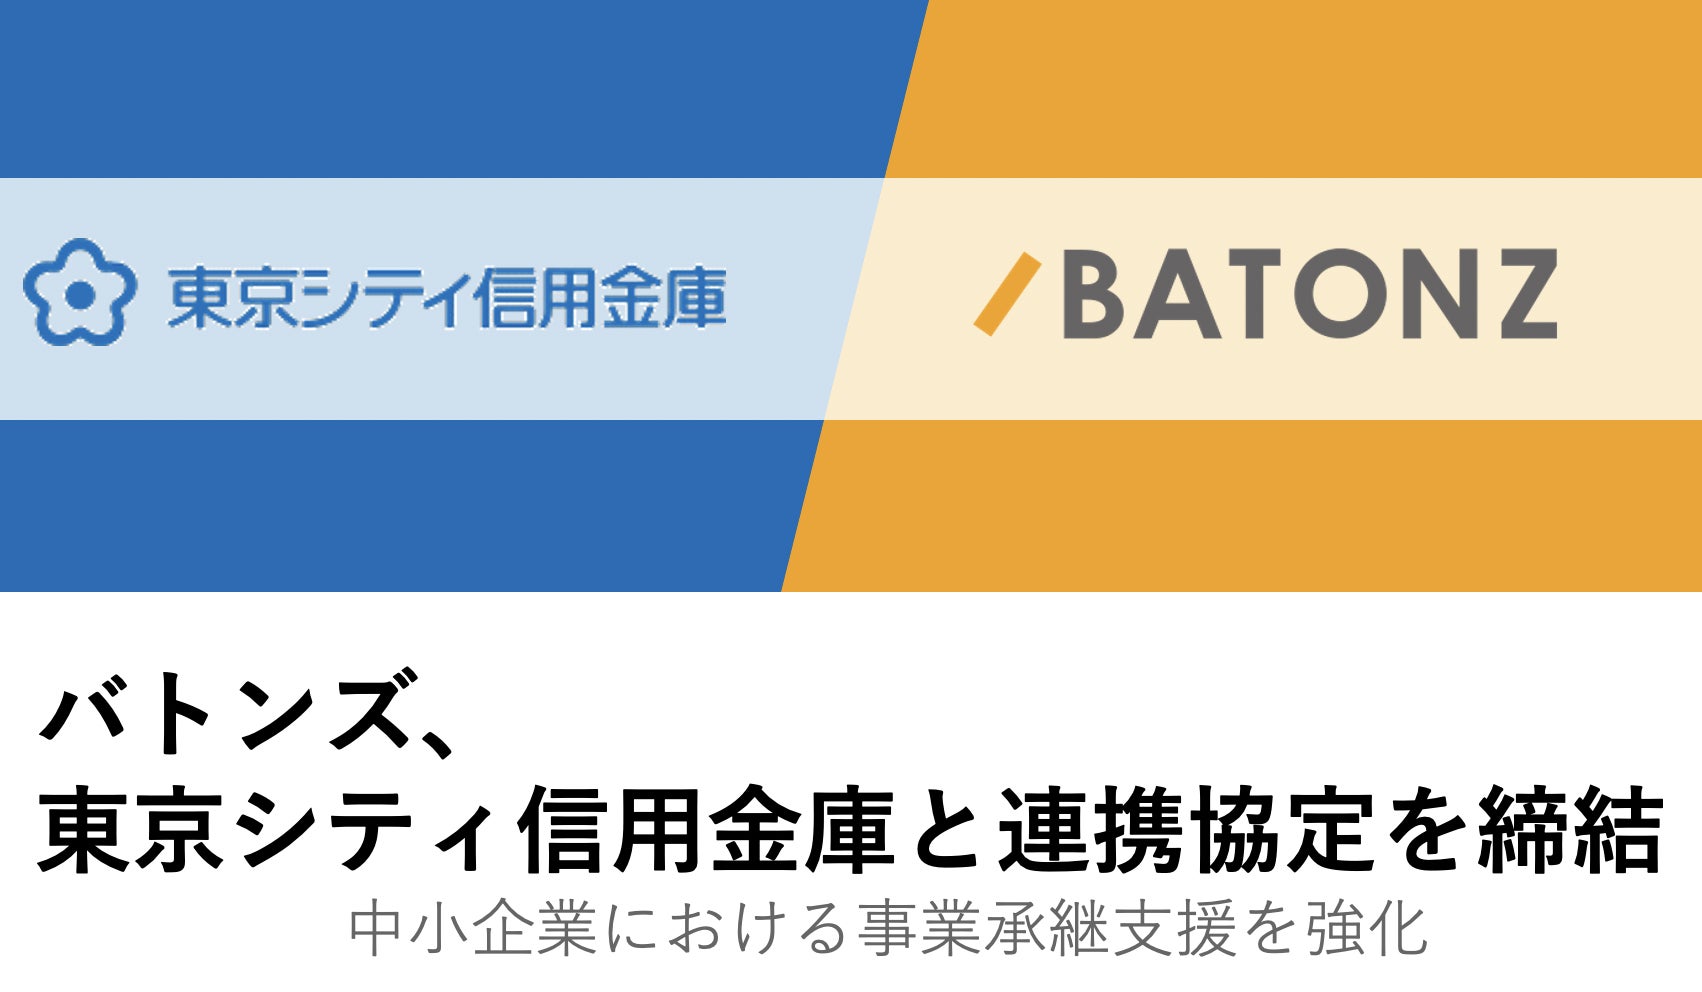 バトンズ、東京シティ信用金庫と連携協定を締結